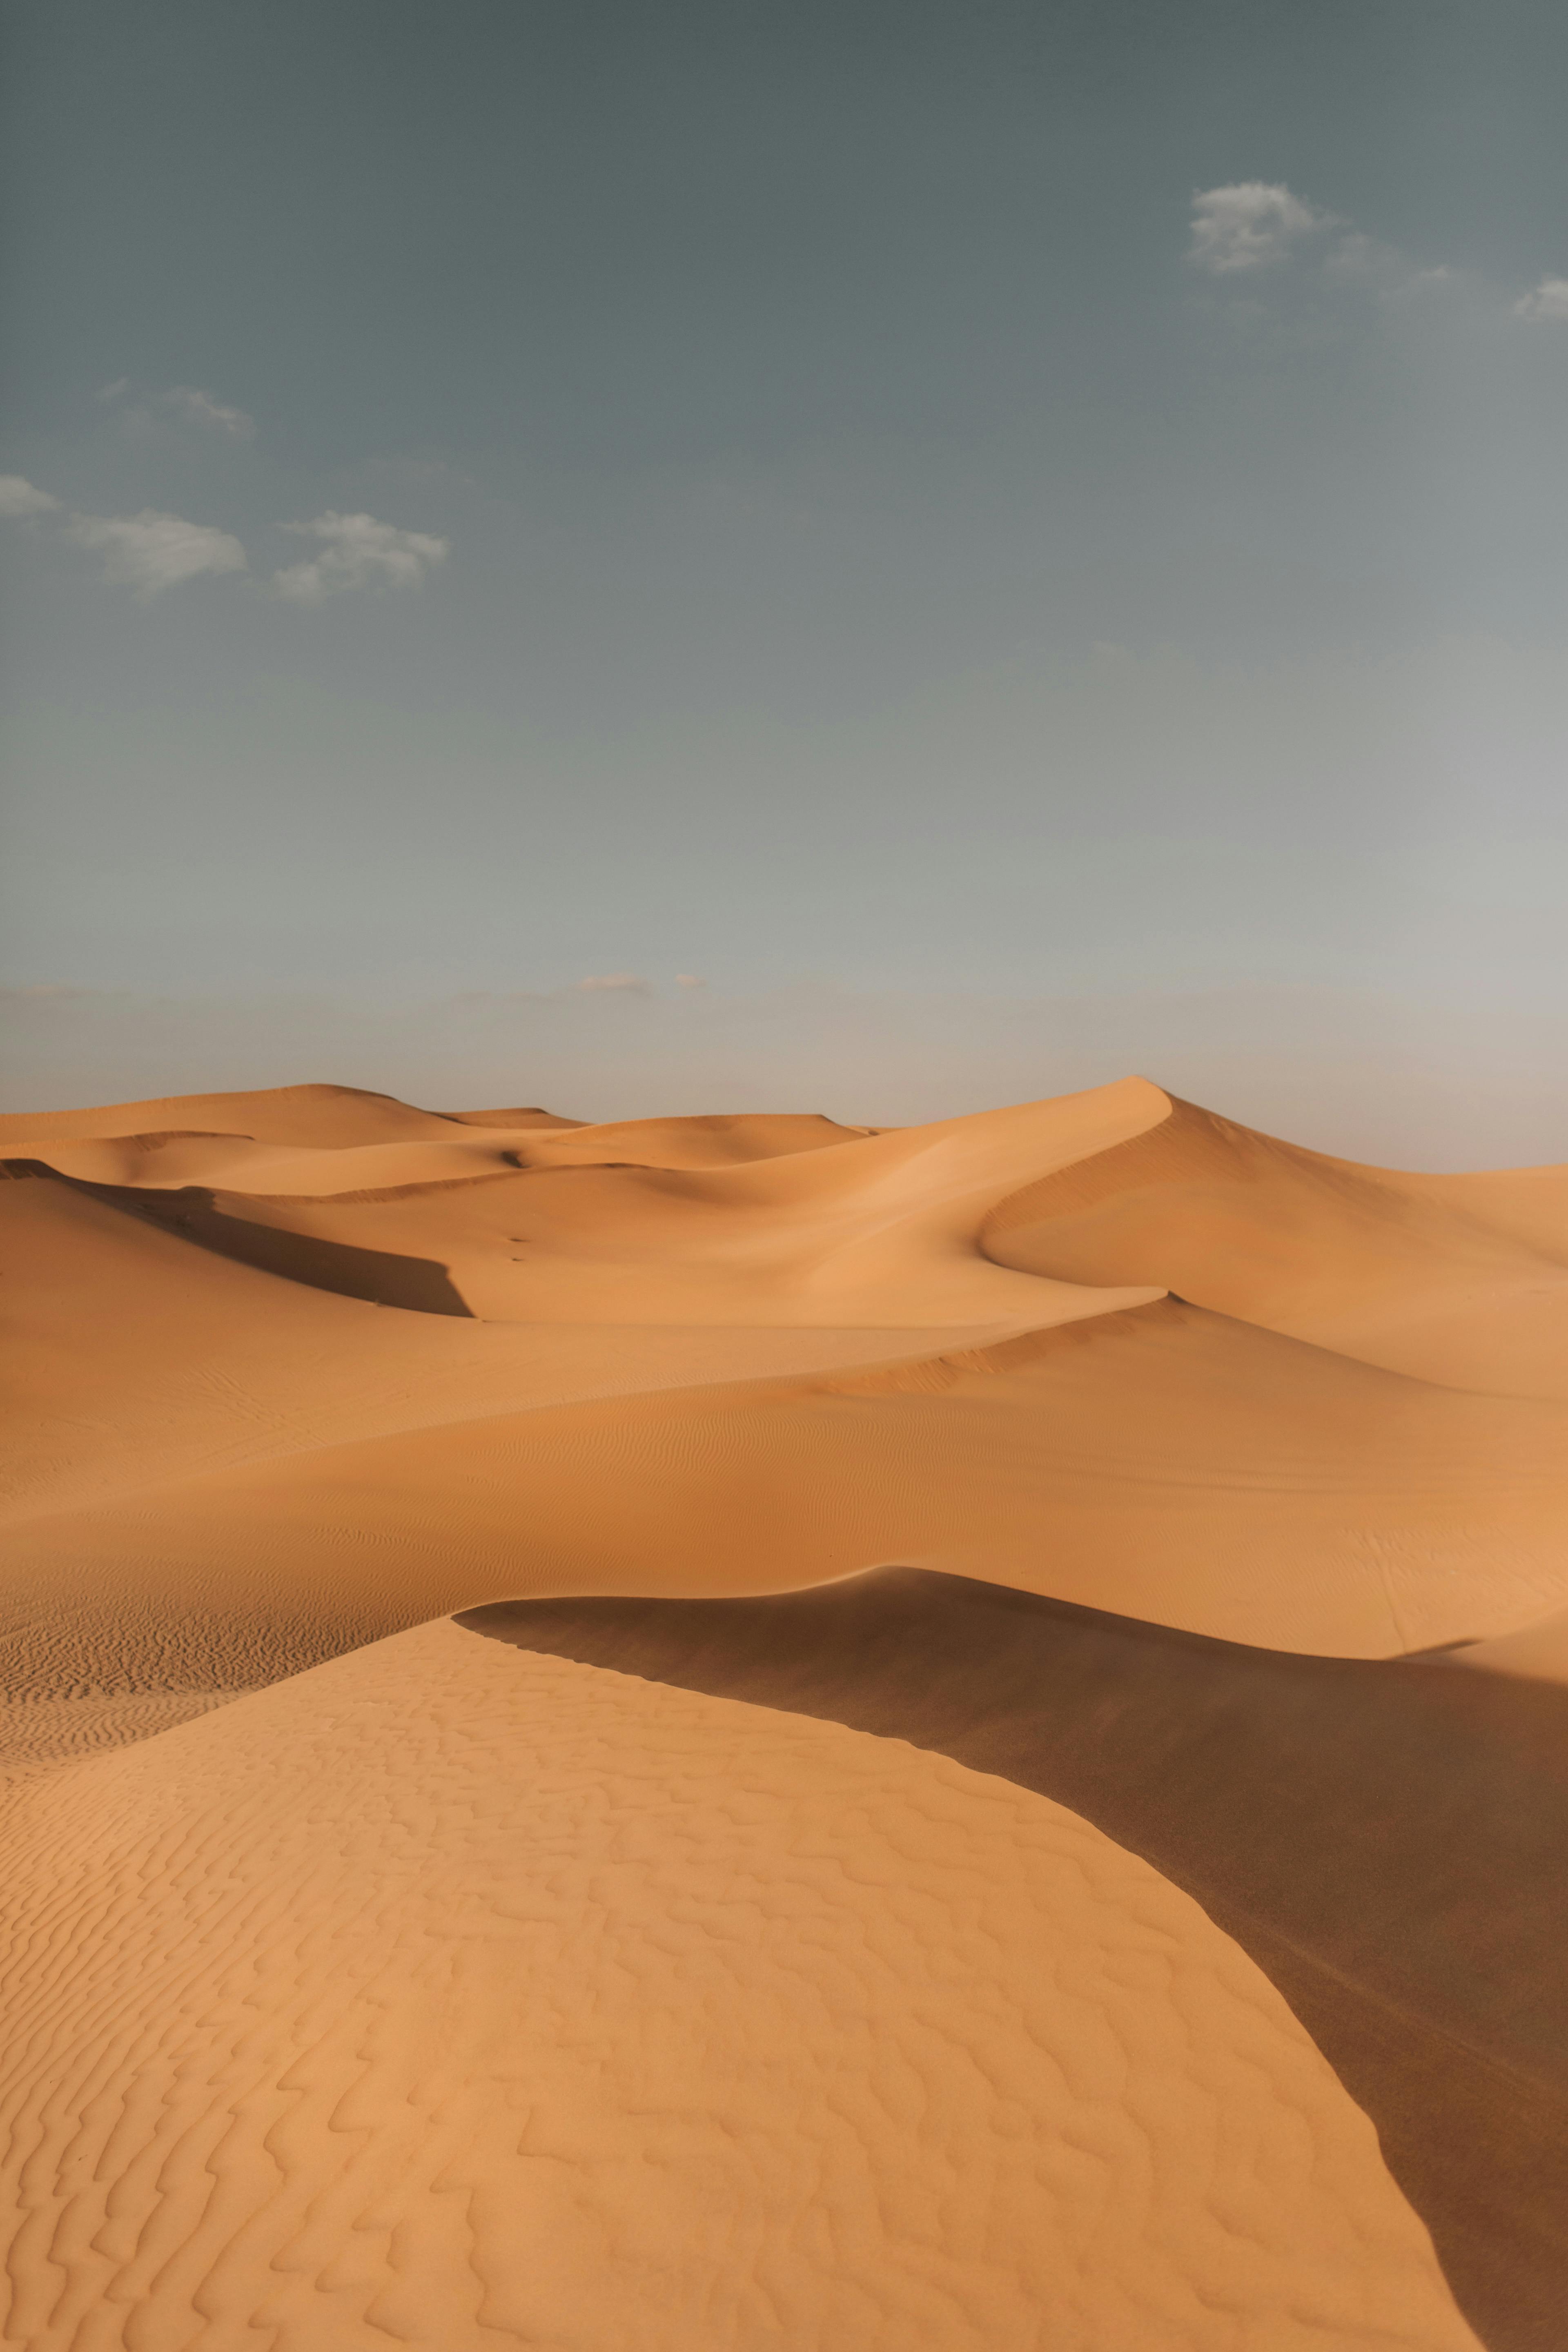 Desert Wallpaper iPhone by Maize0 on DeviantArt